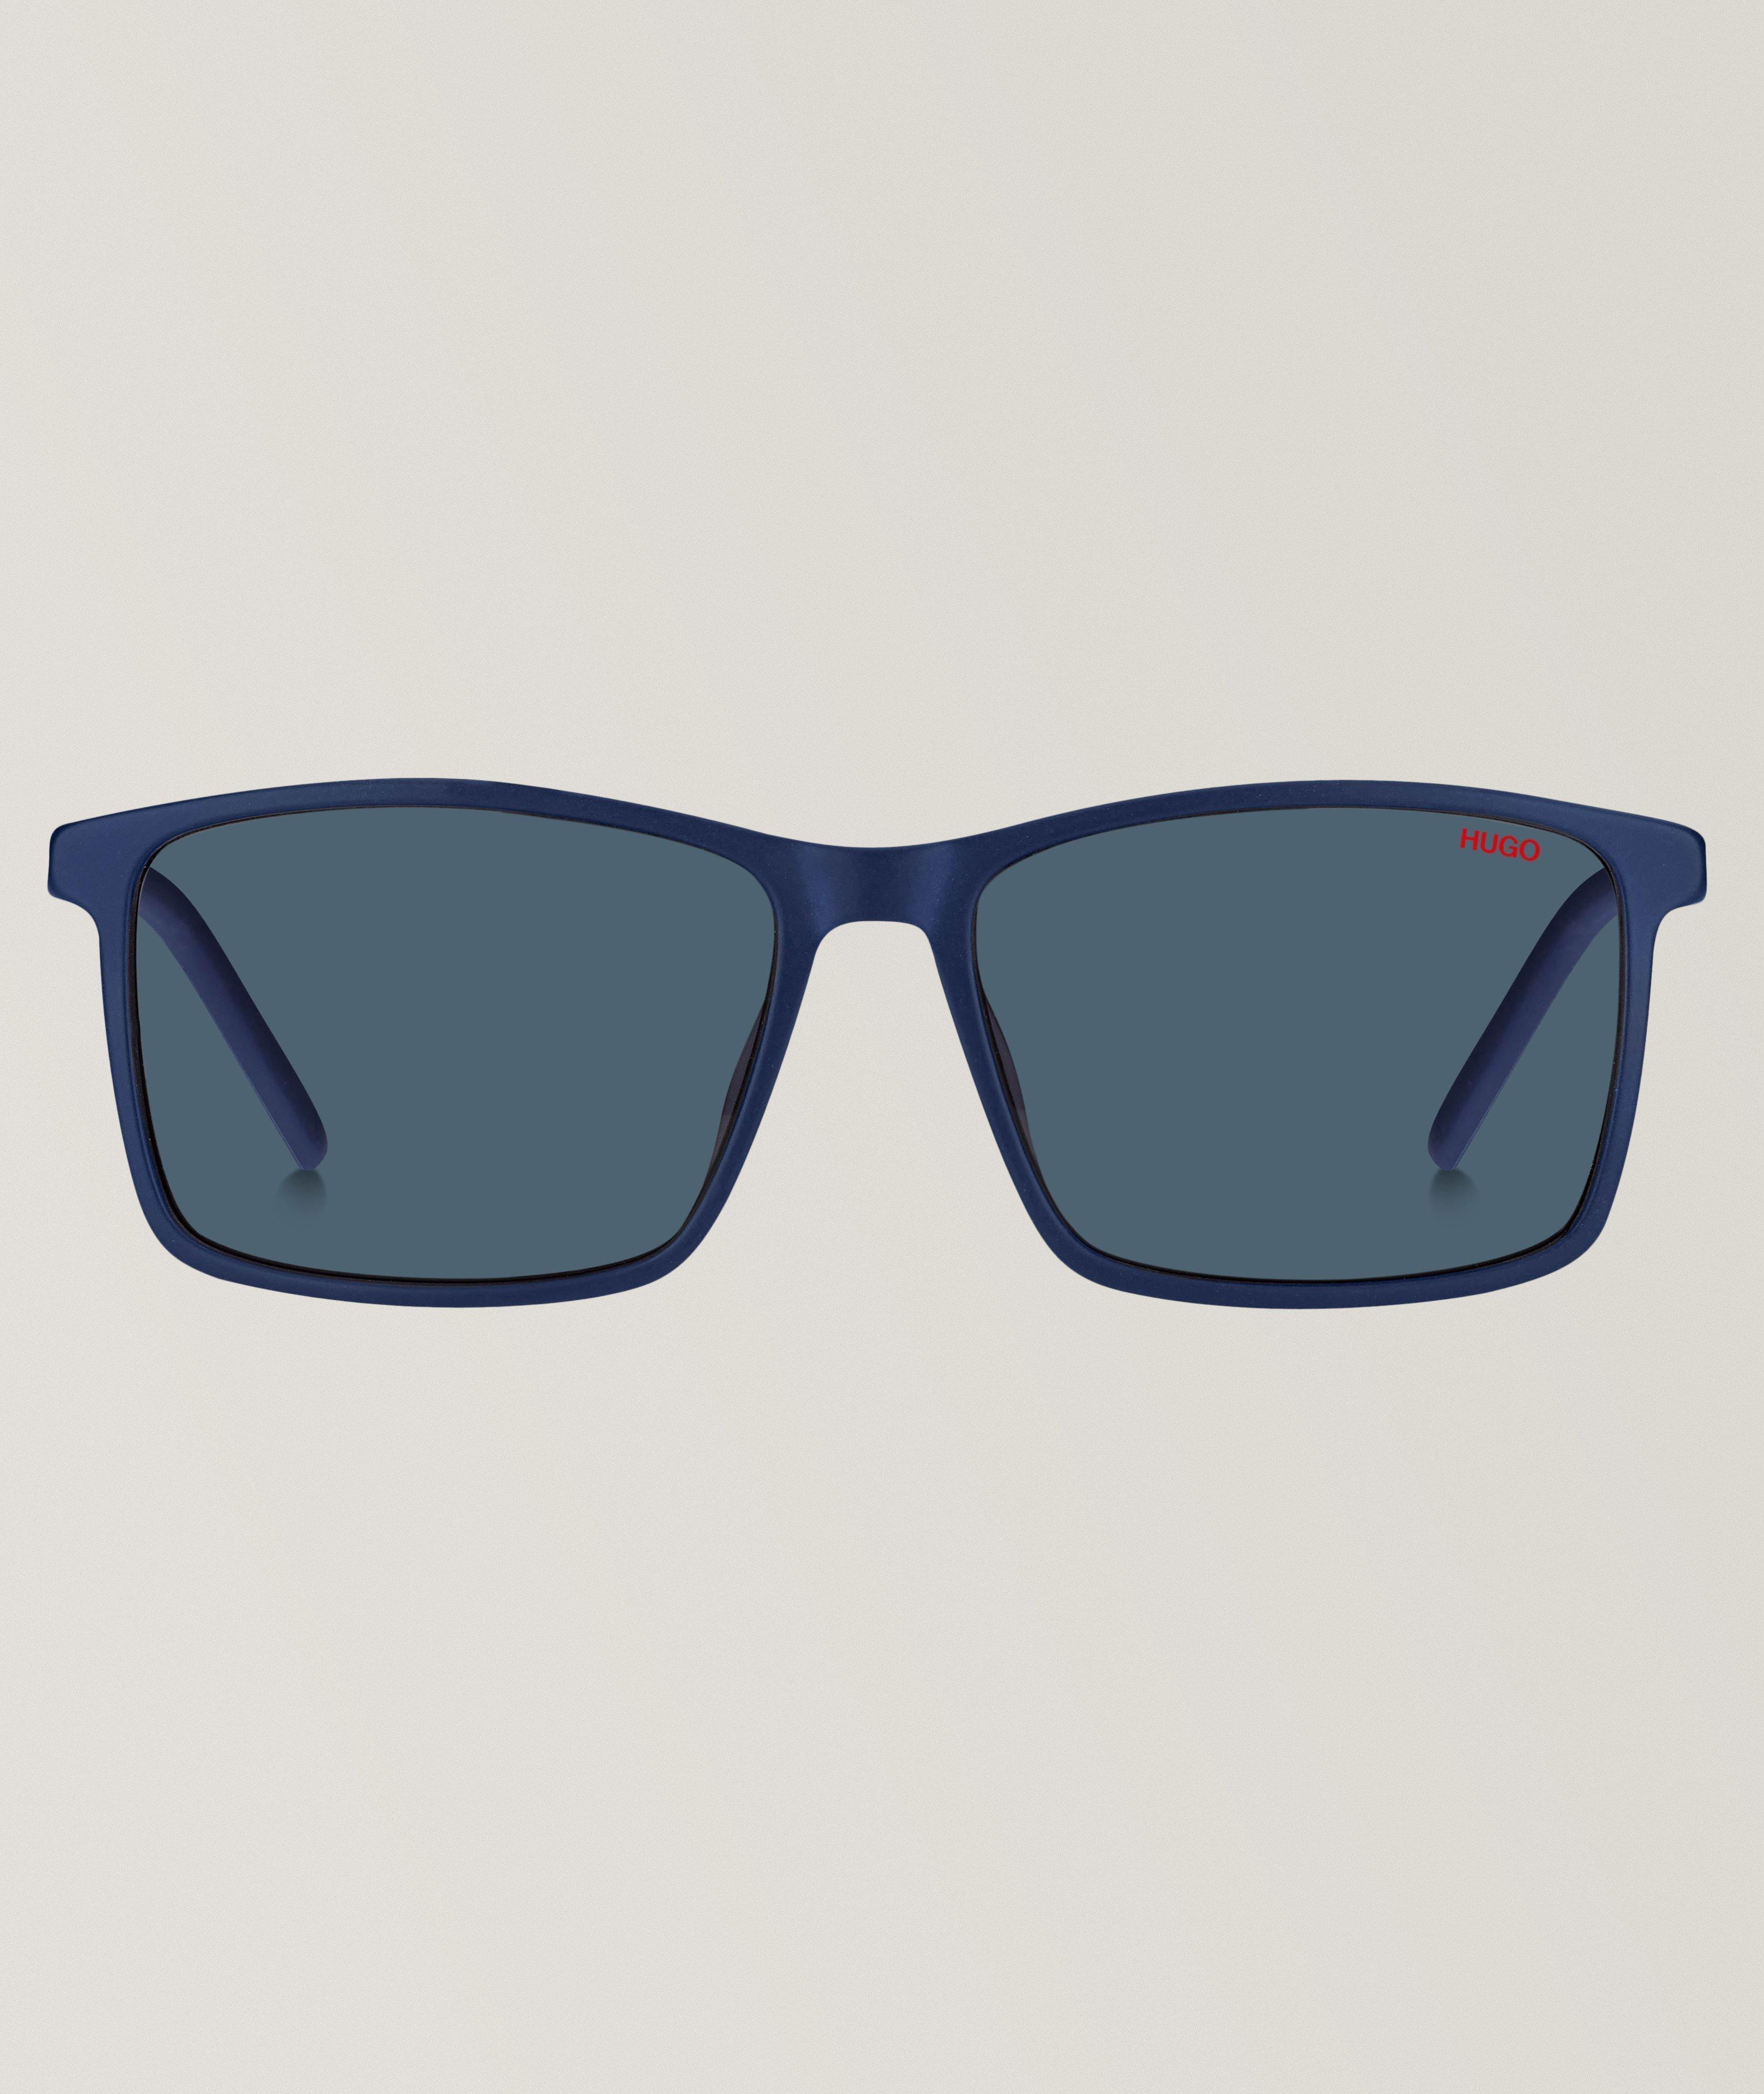 Hugo Matt Blue Sunglasses With Blue Lenses